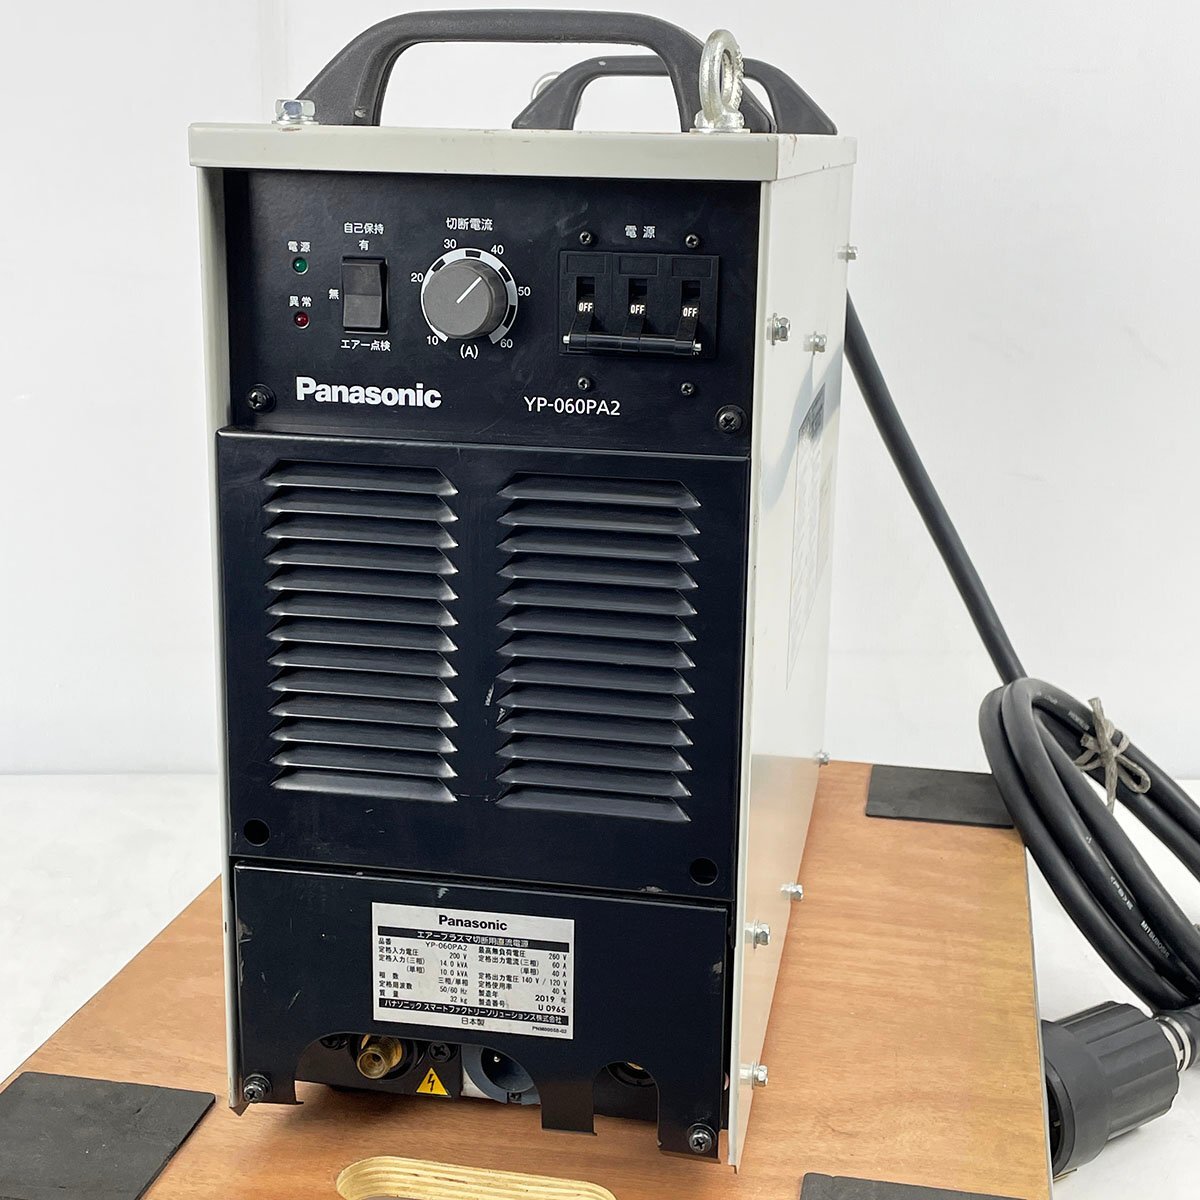 Panasonic Panasonic воздушный плазма режущий станок YP-060PA2 фонарь YT-06PD3TAE имеется 2019 год производства [K5425]